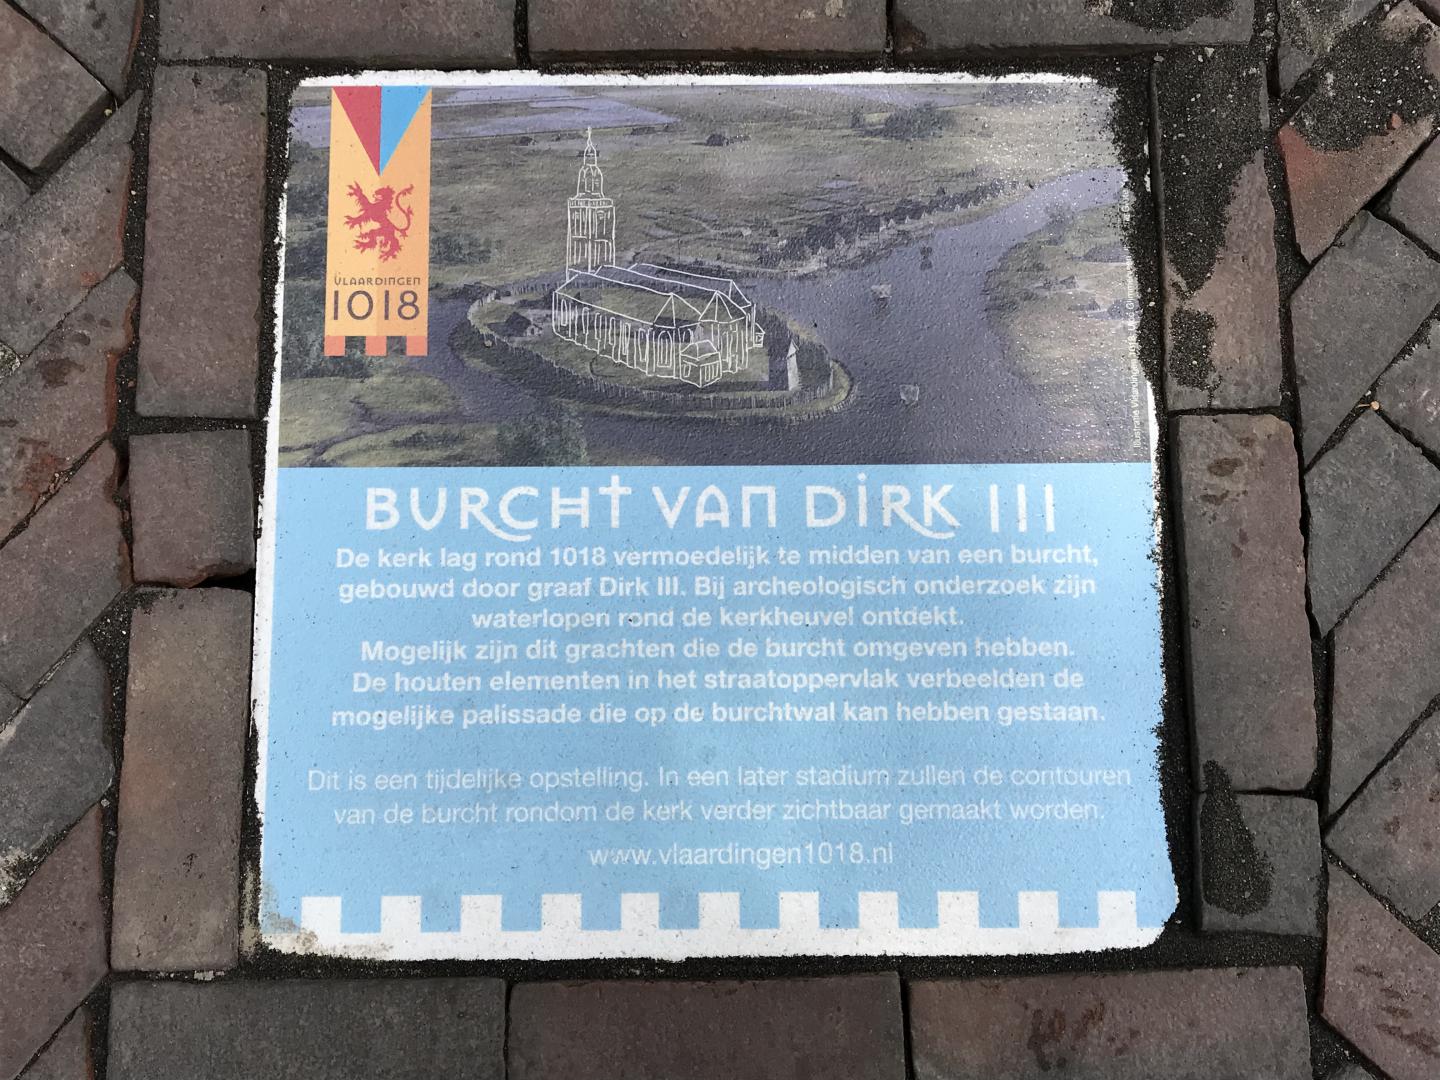 Aangetroffen resten Burcht Dirk III uit 1018 (Slag bij Vlaardingen)